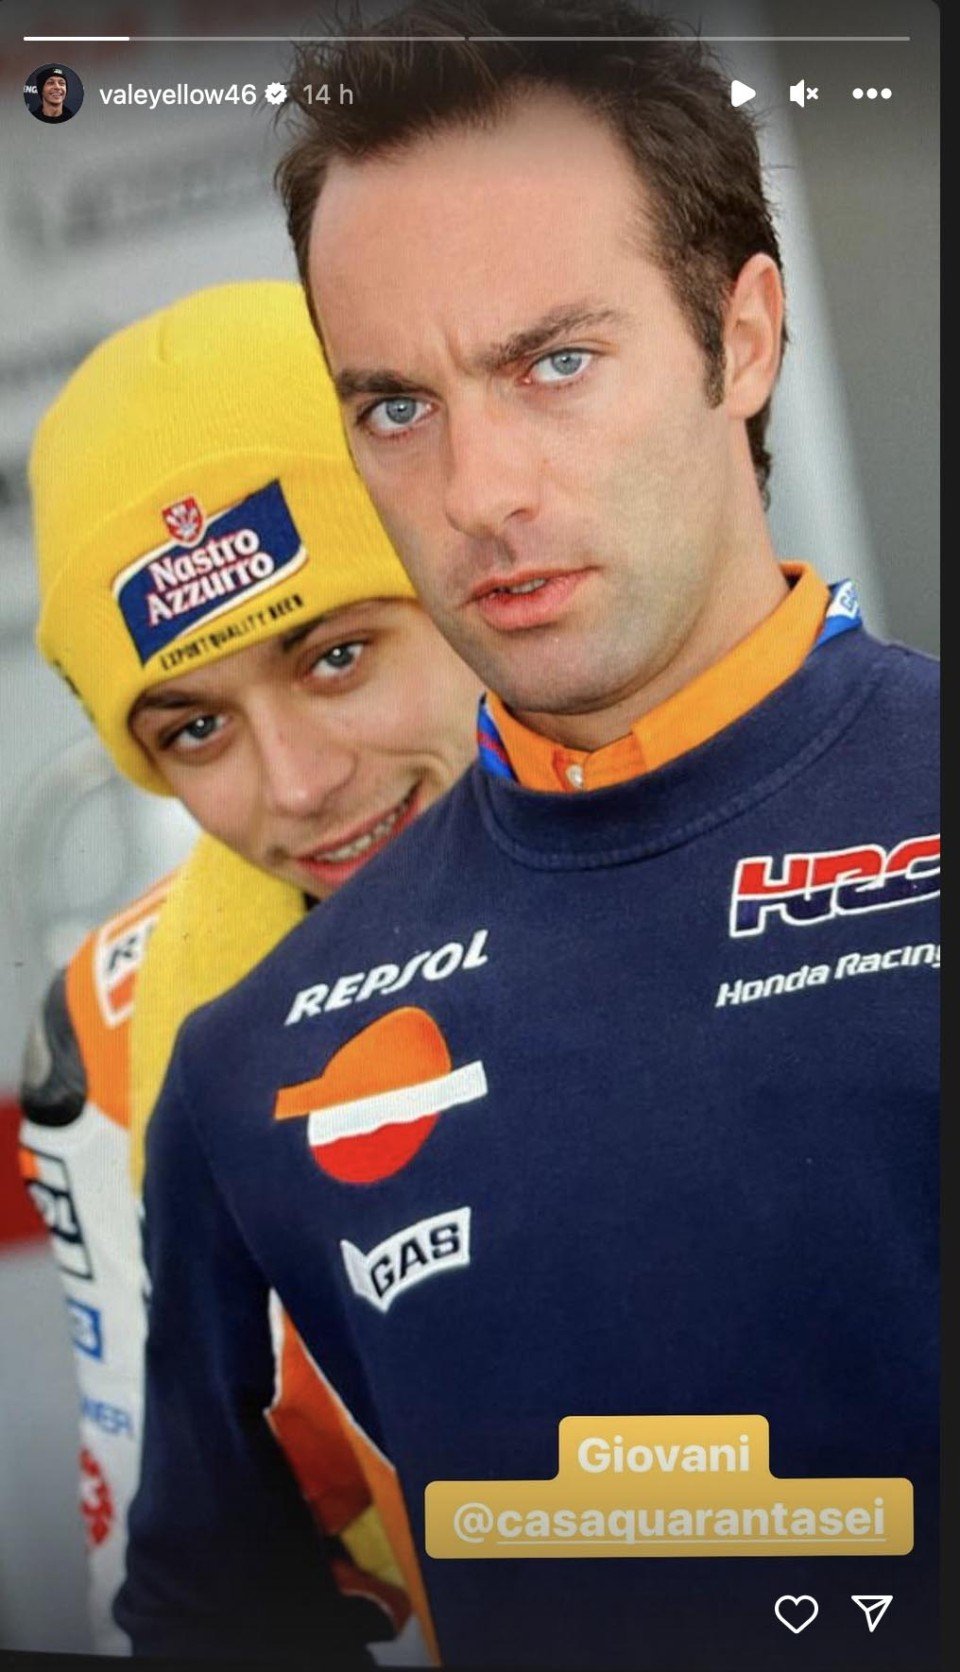 MotoGP: Valentino Rossi su instagram con la tuta Repsol: due coincidenze fanno un indizio